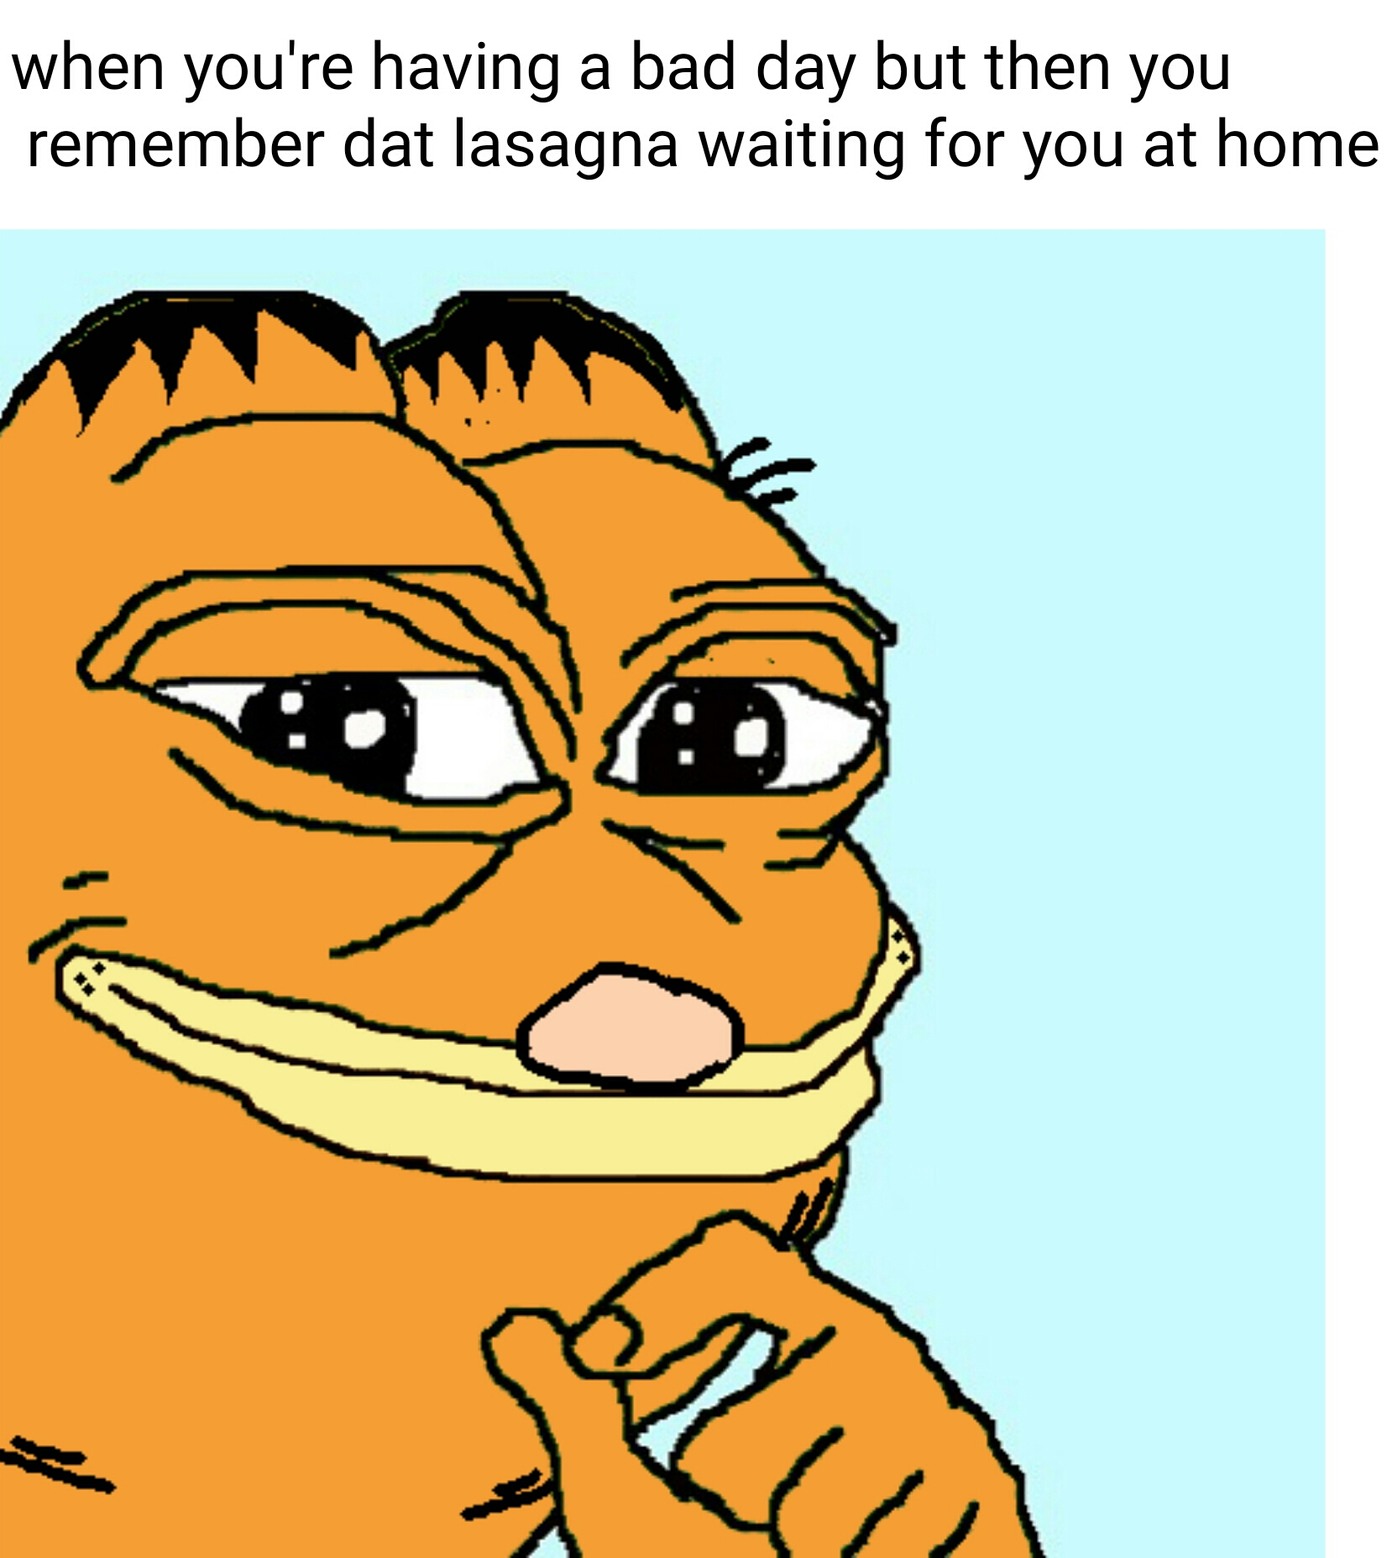 Lasagna is love - meme